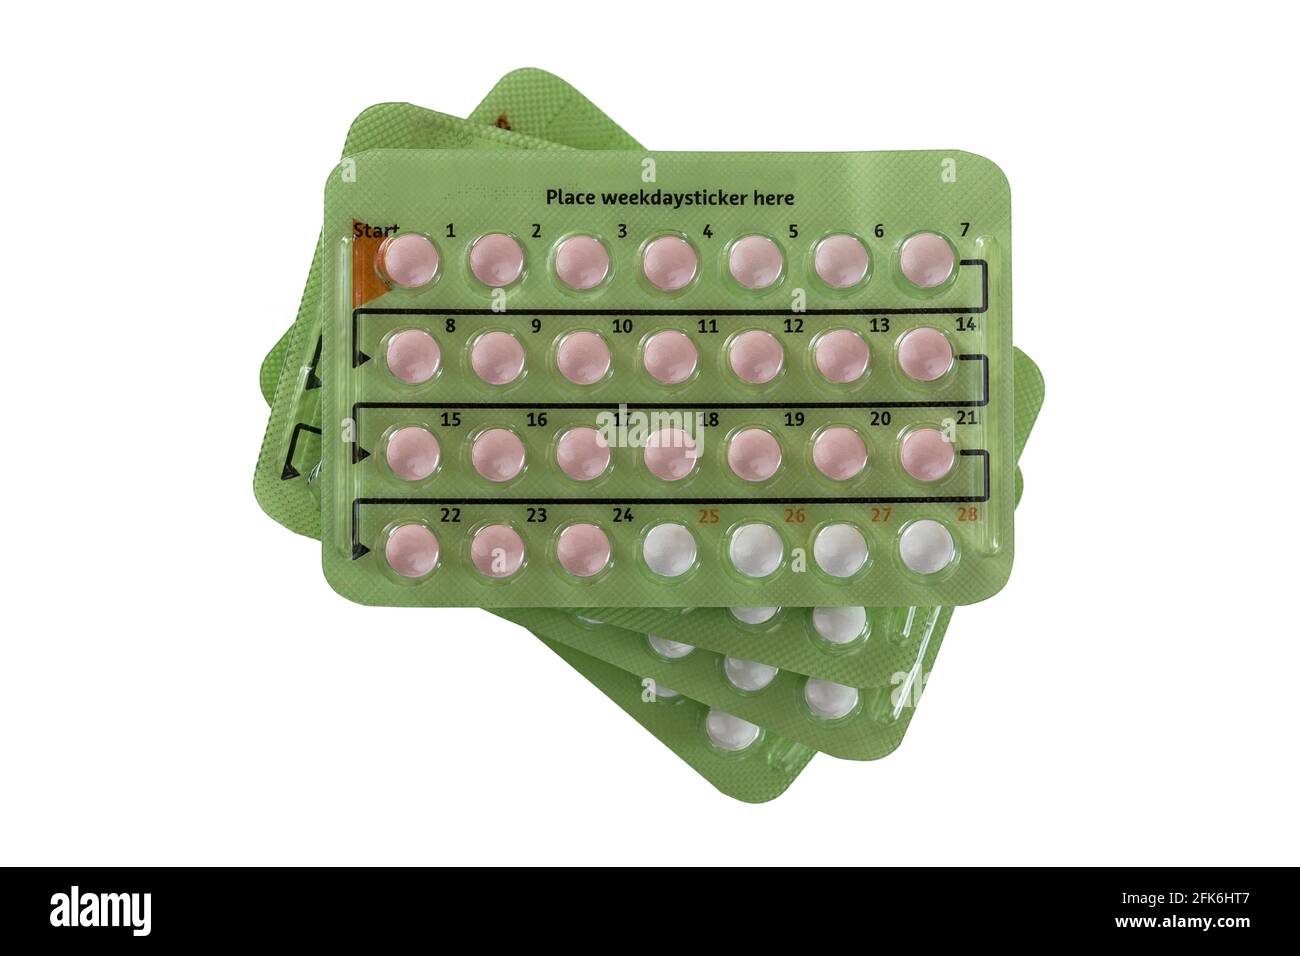 Pile de pilules contraceptives en 28 paquets de pilules. Il y a 24 pilules hormonales, 4 pilules placebo non hormonales, isolées sur fond blanc Banque D'Images